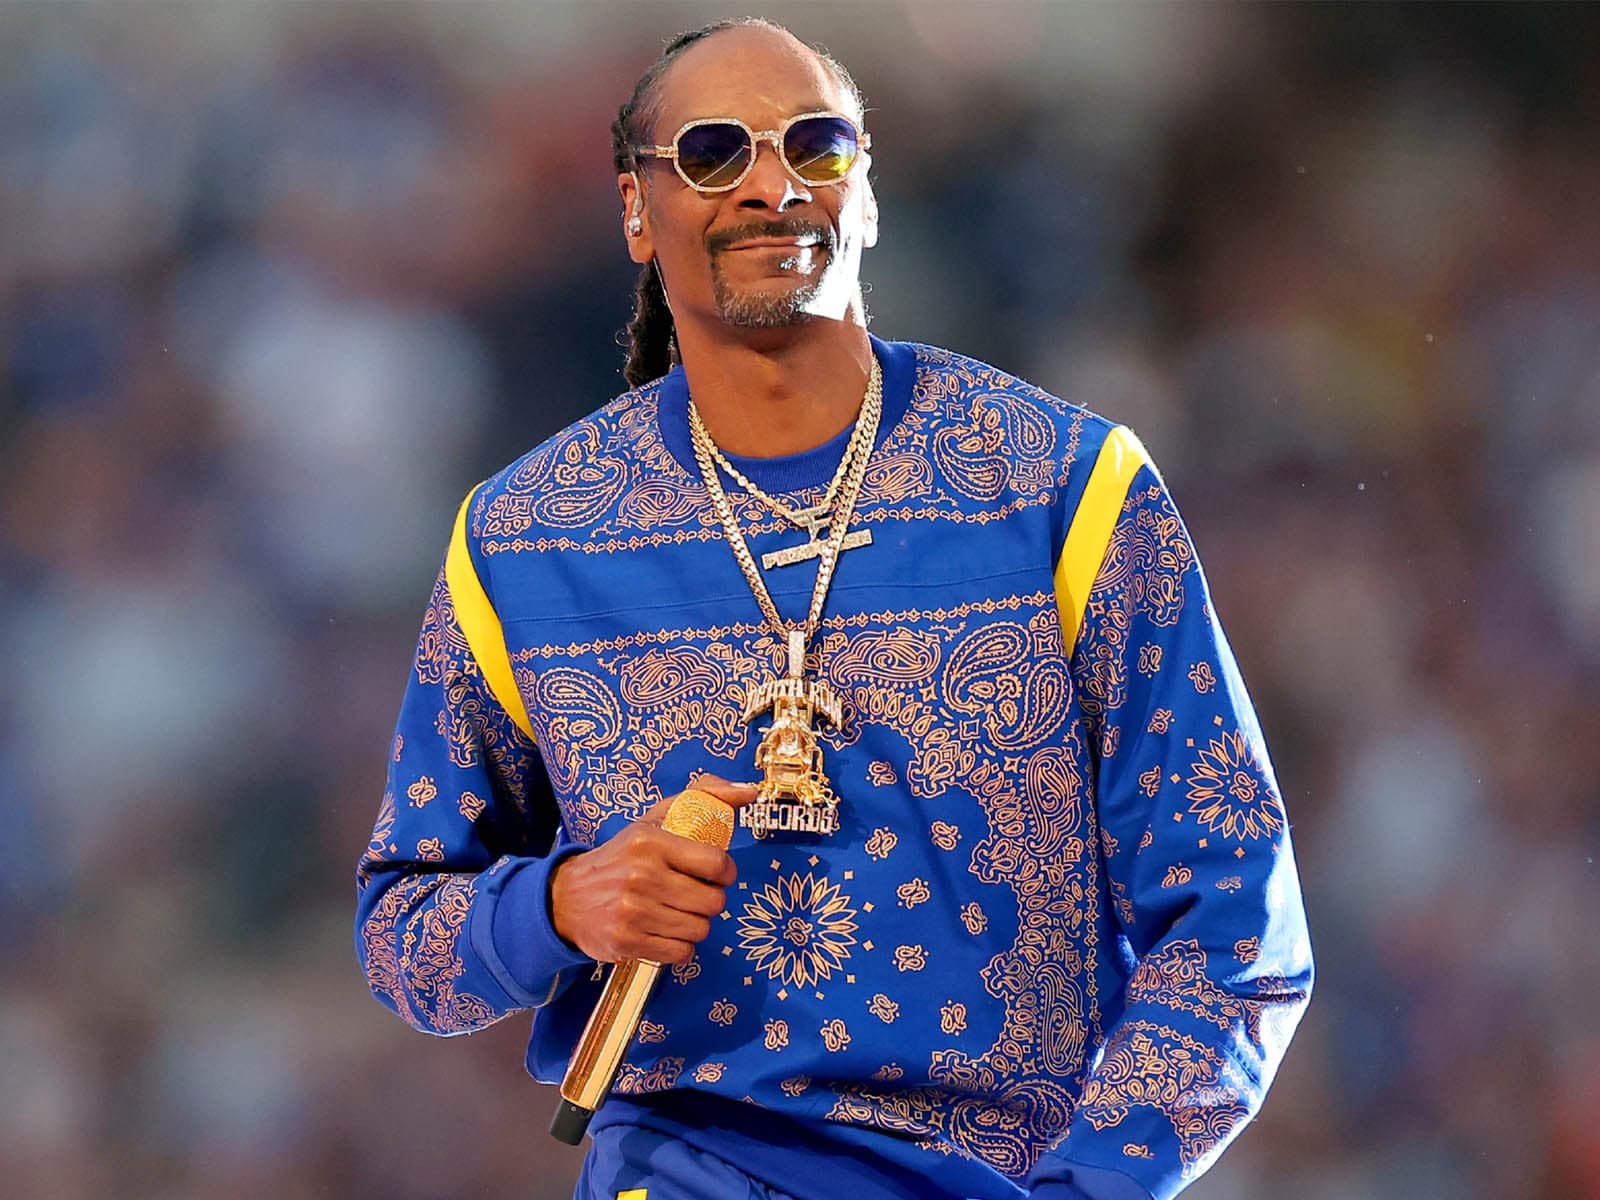 Snoop Dogg x la banda K-pop BTS: confirmado